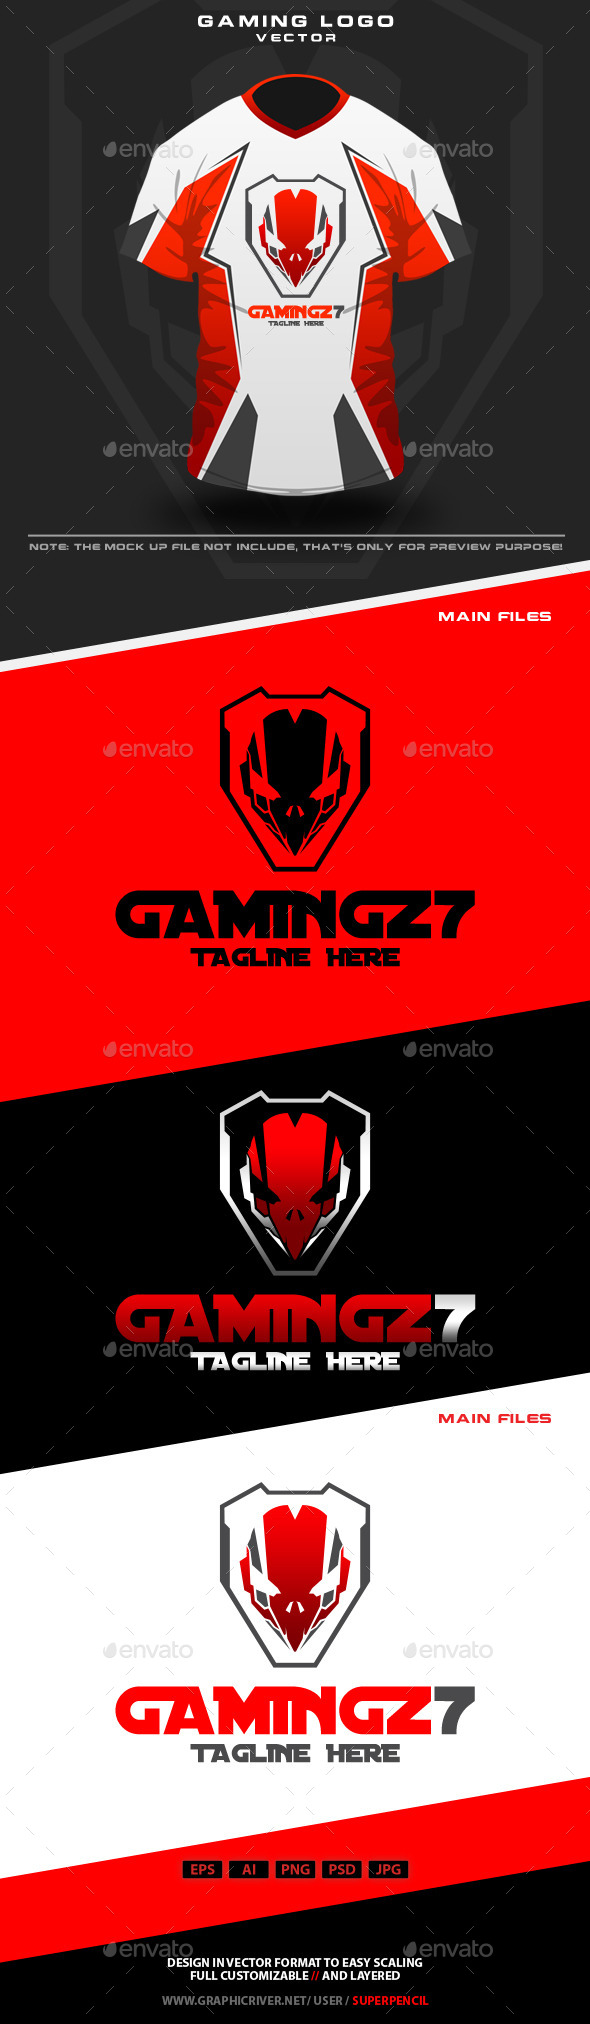 Gamingz7 Logo